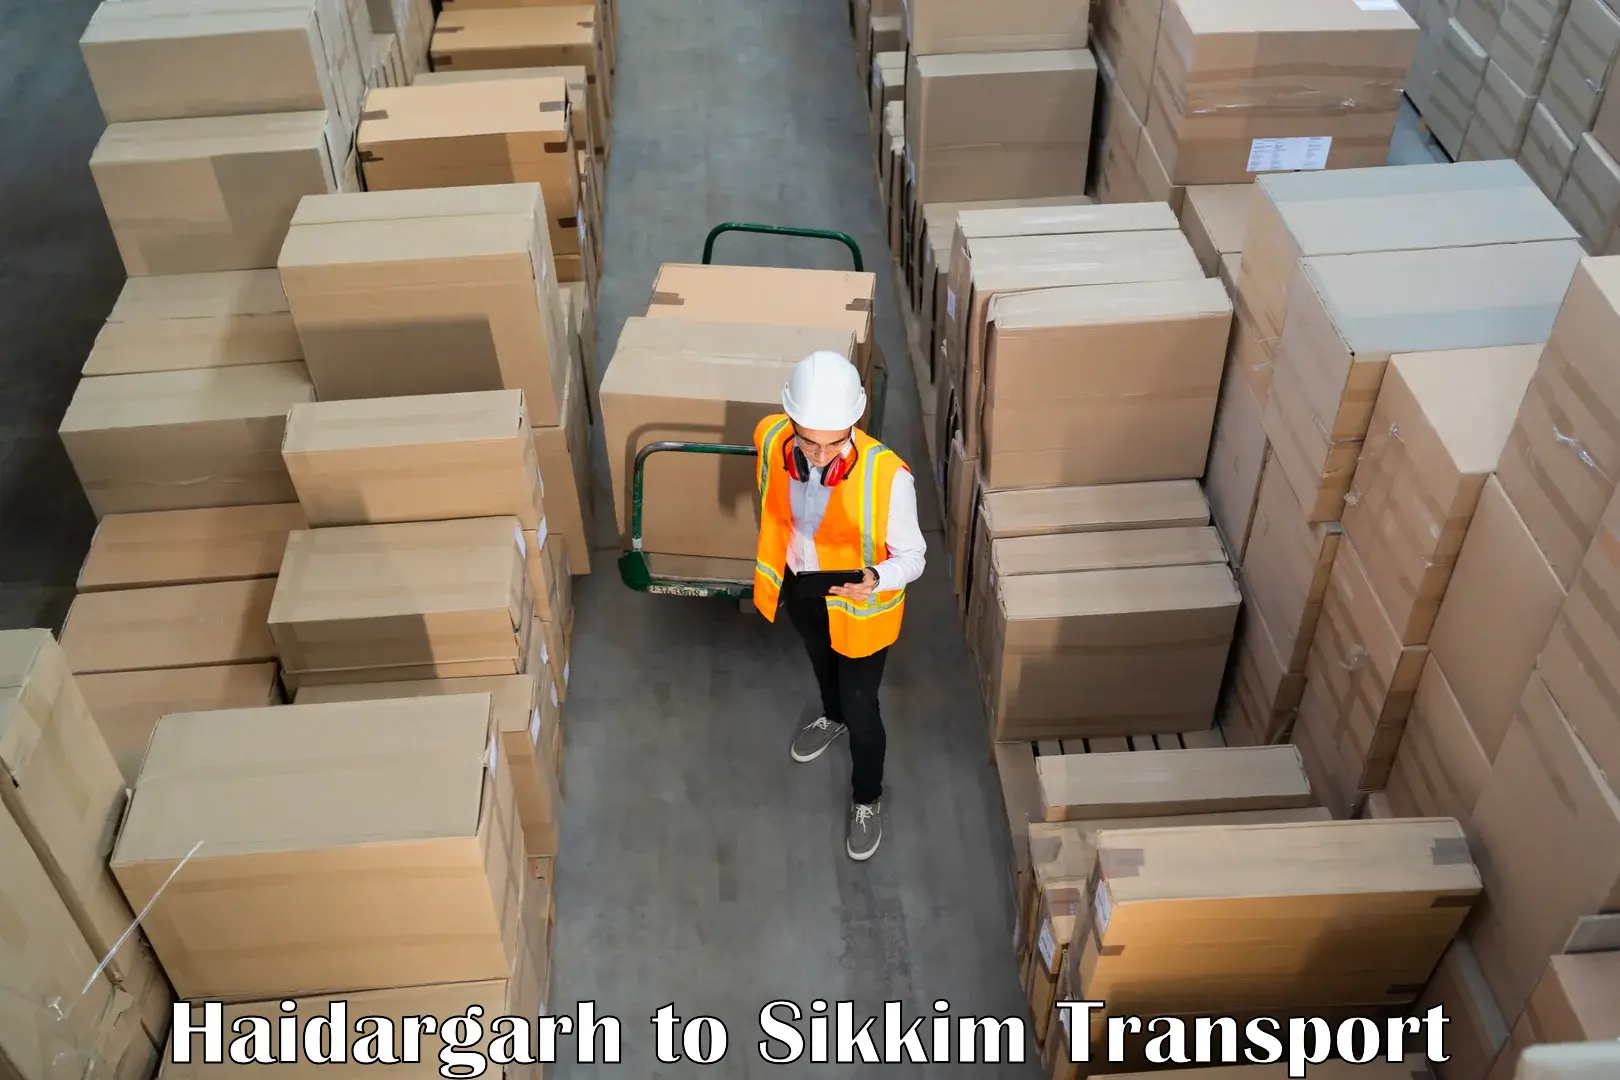 Lorry transport service Haidargarh to Mangan